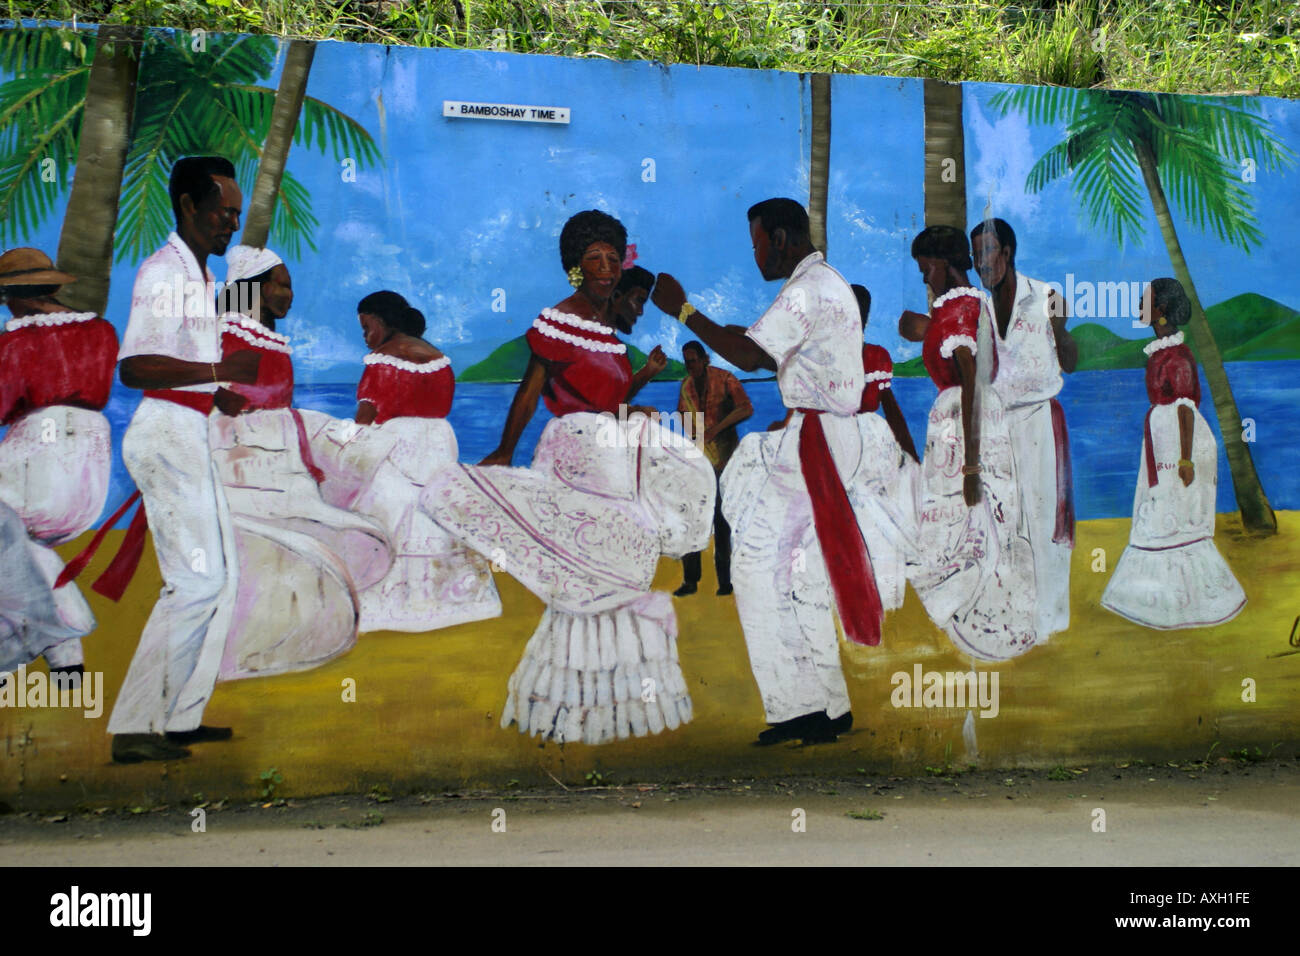 Islas Vírgenes Británicas Tortola mural en la carretera Foto de stock